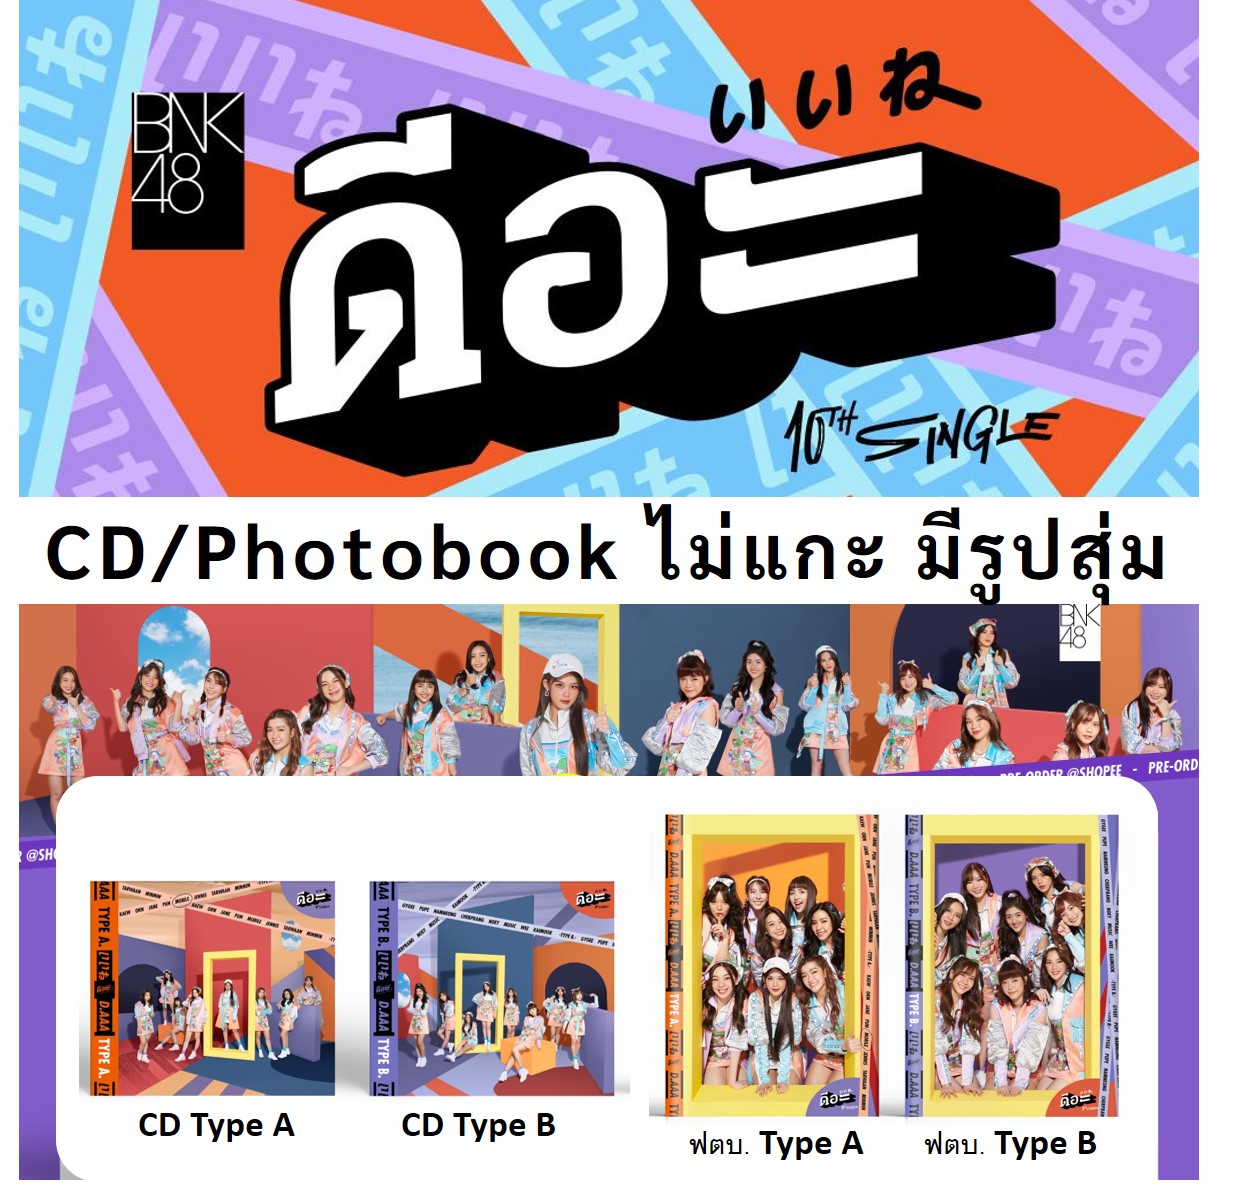 CD/DVD & Photobook BNK48 10th Single ดีอ่ะ แบบไม่แกะ มีรูปสุ่ม ลิขสิทธิ์แท้